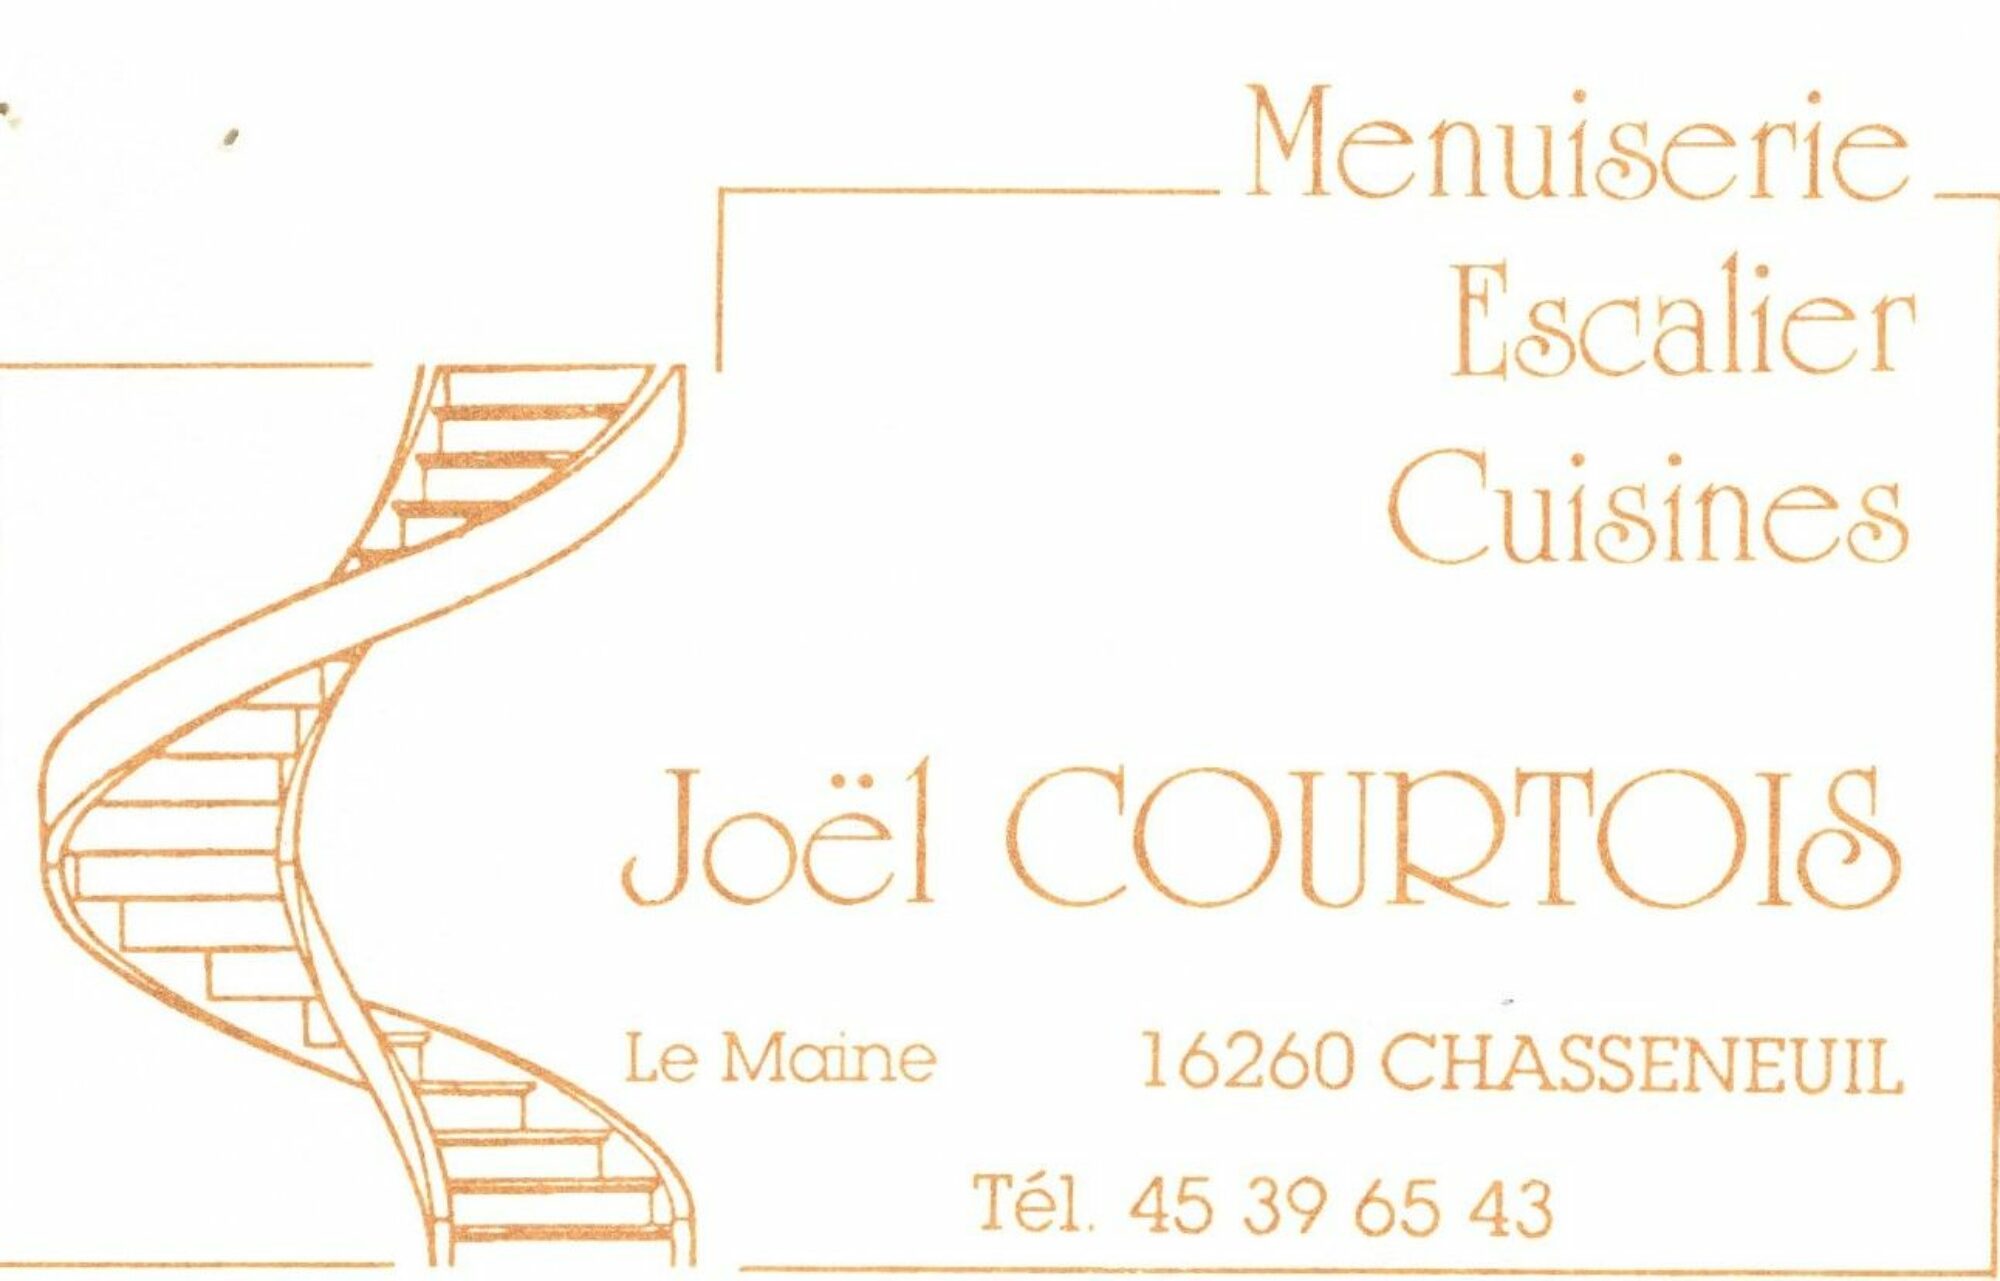 Joël Courtois